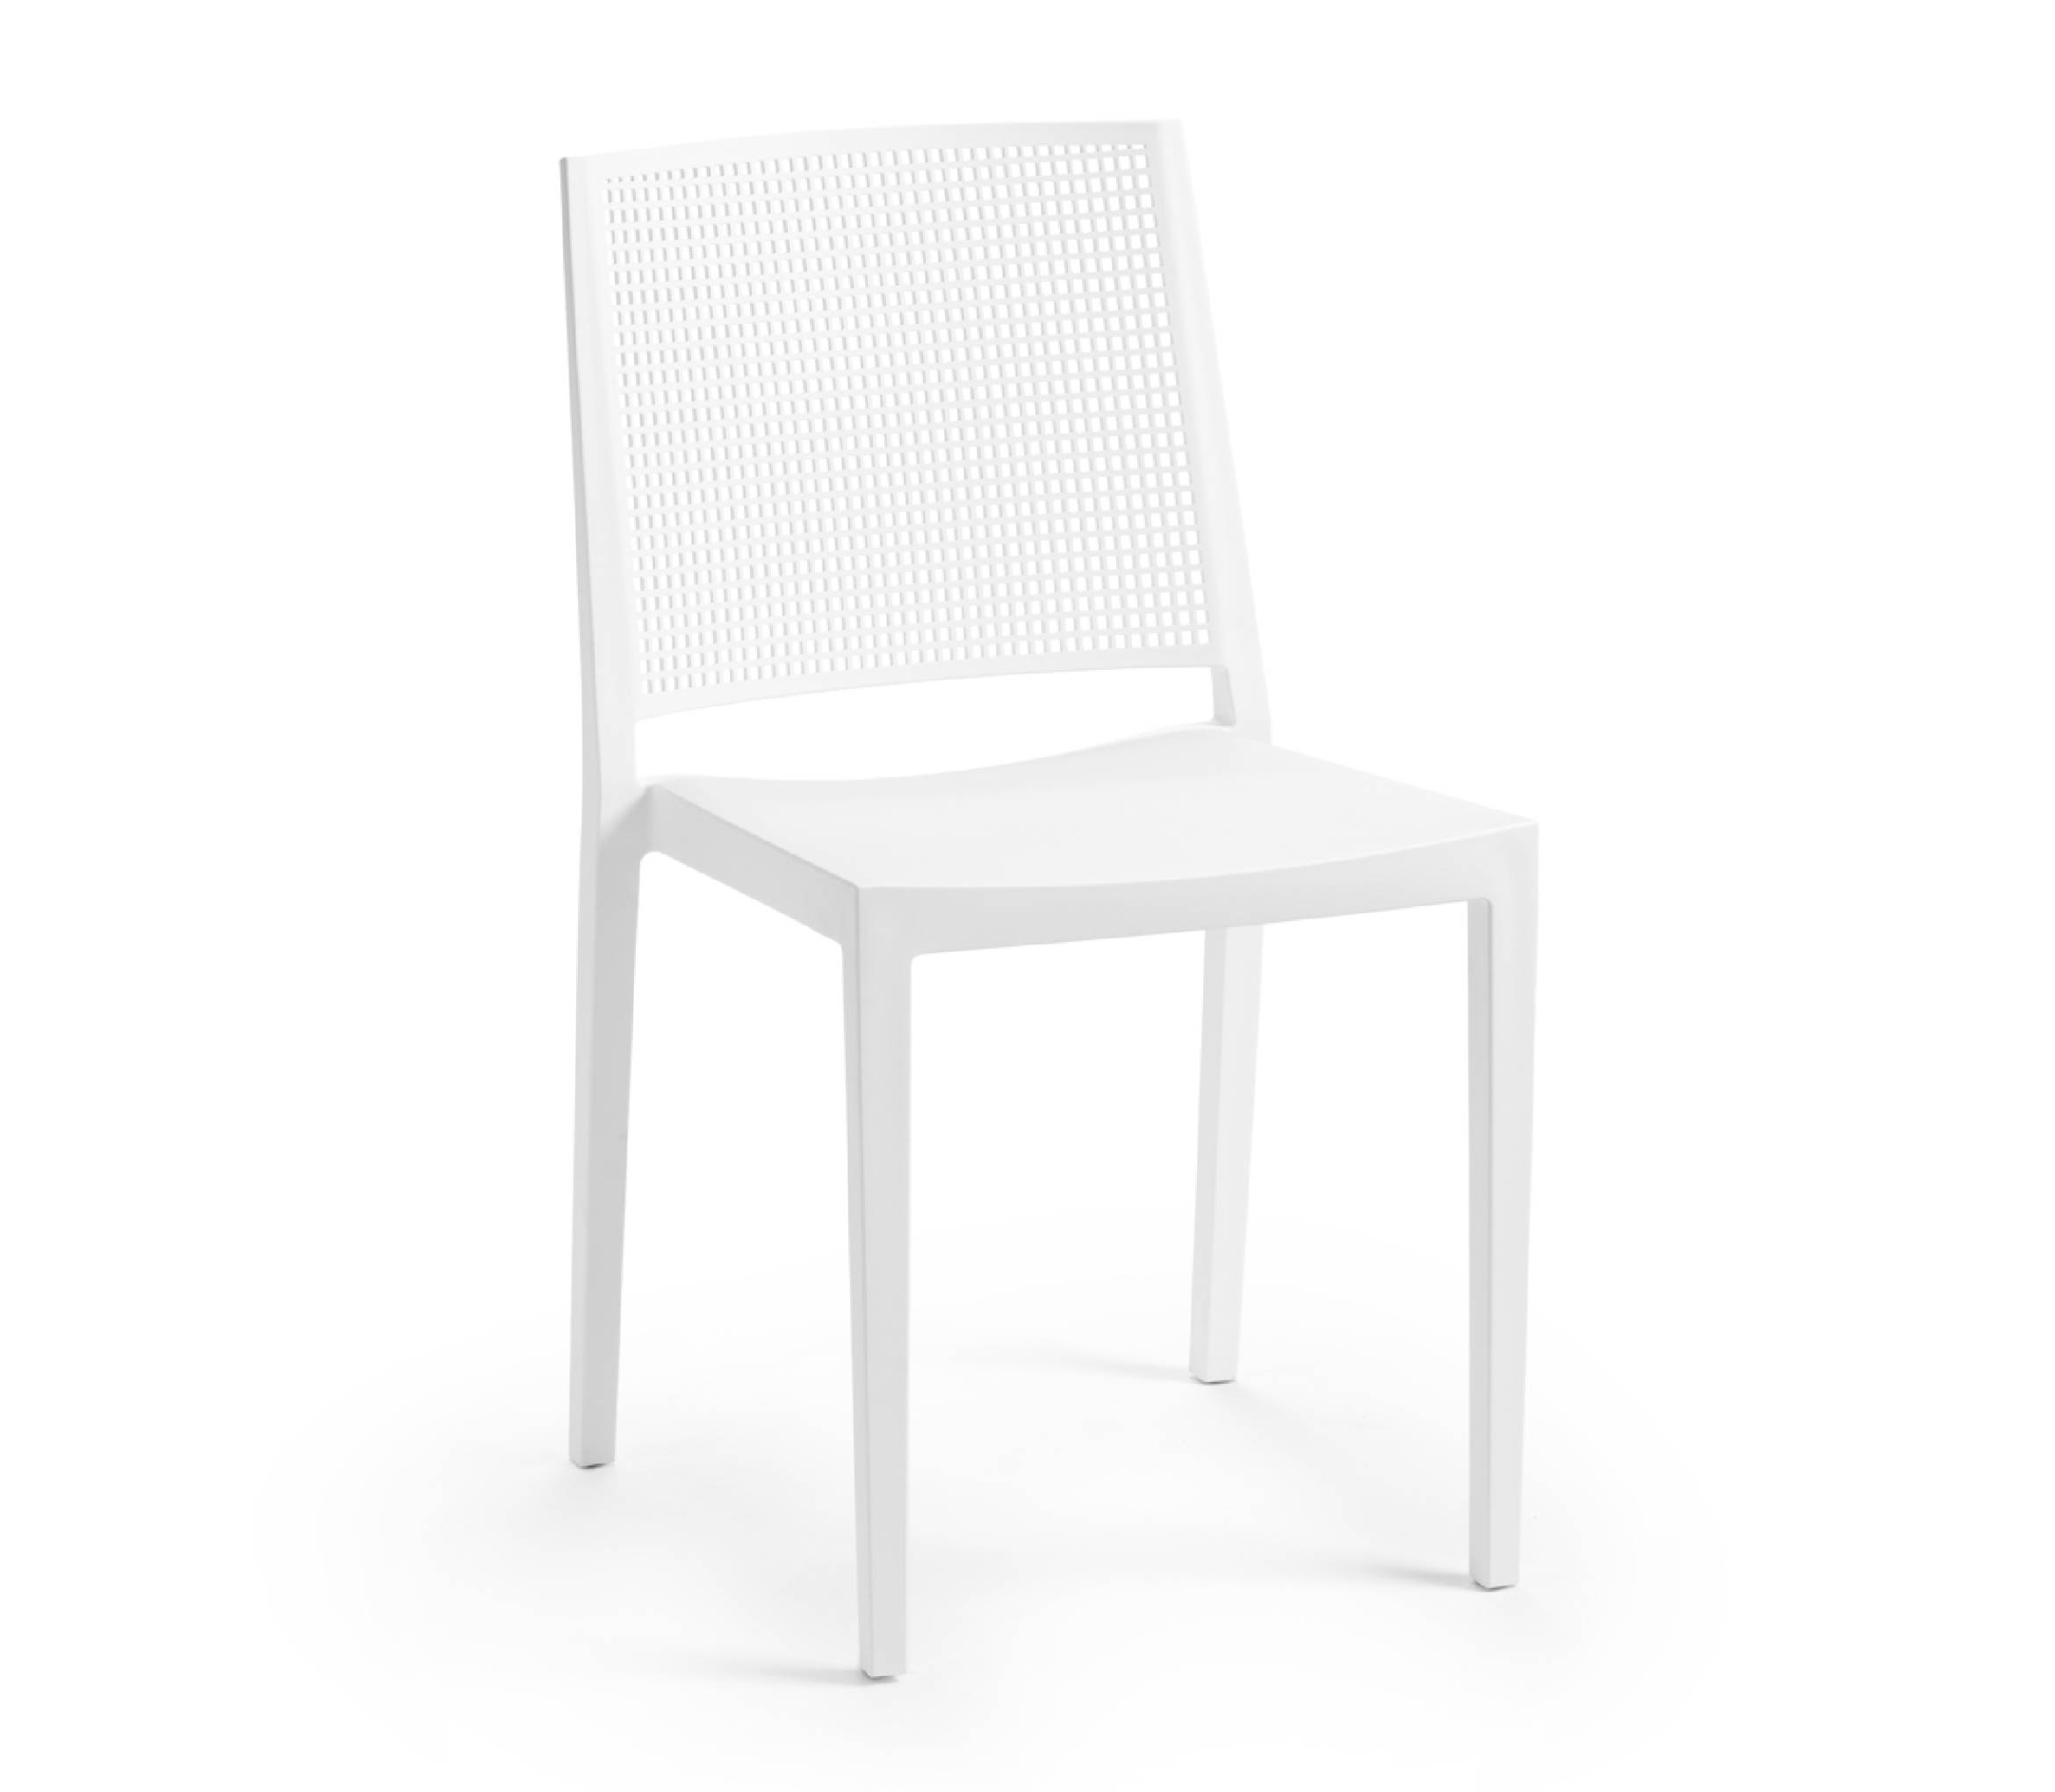 TENSAI_FURNITURE_GRID_WHITE_100 plastic chair